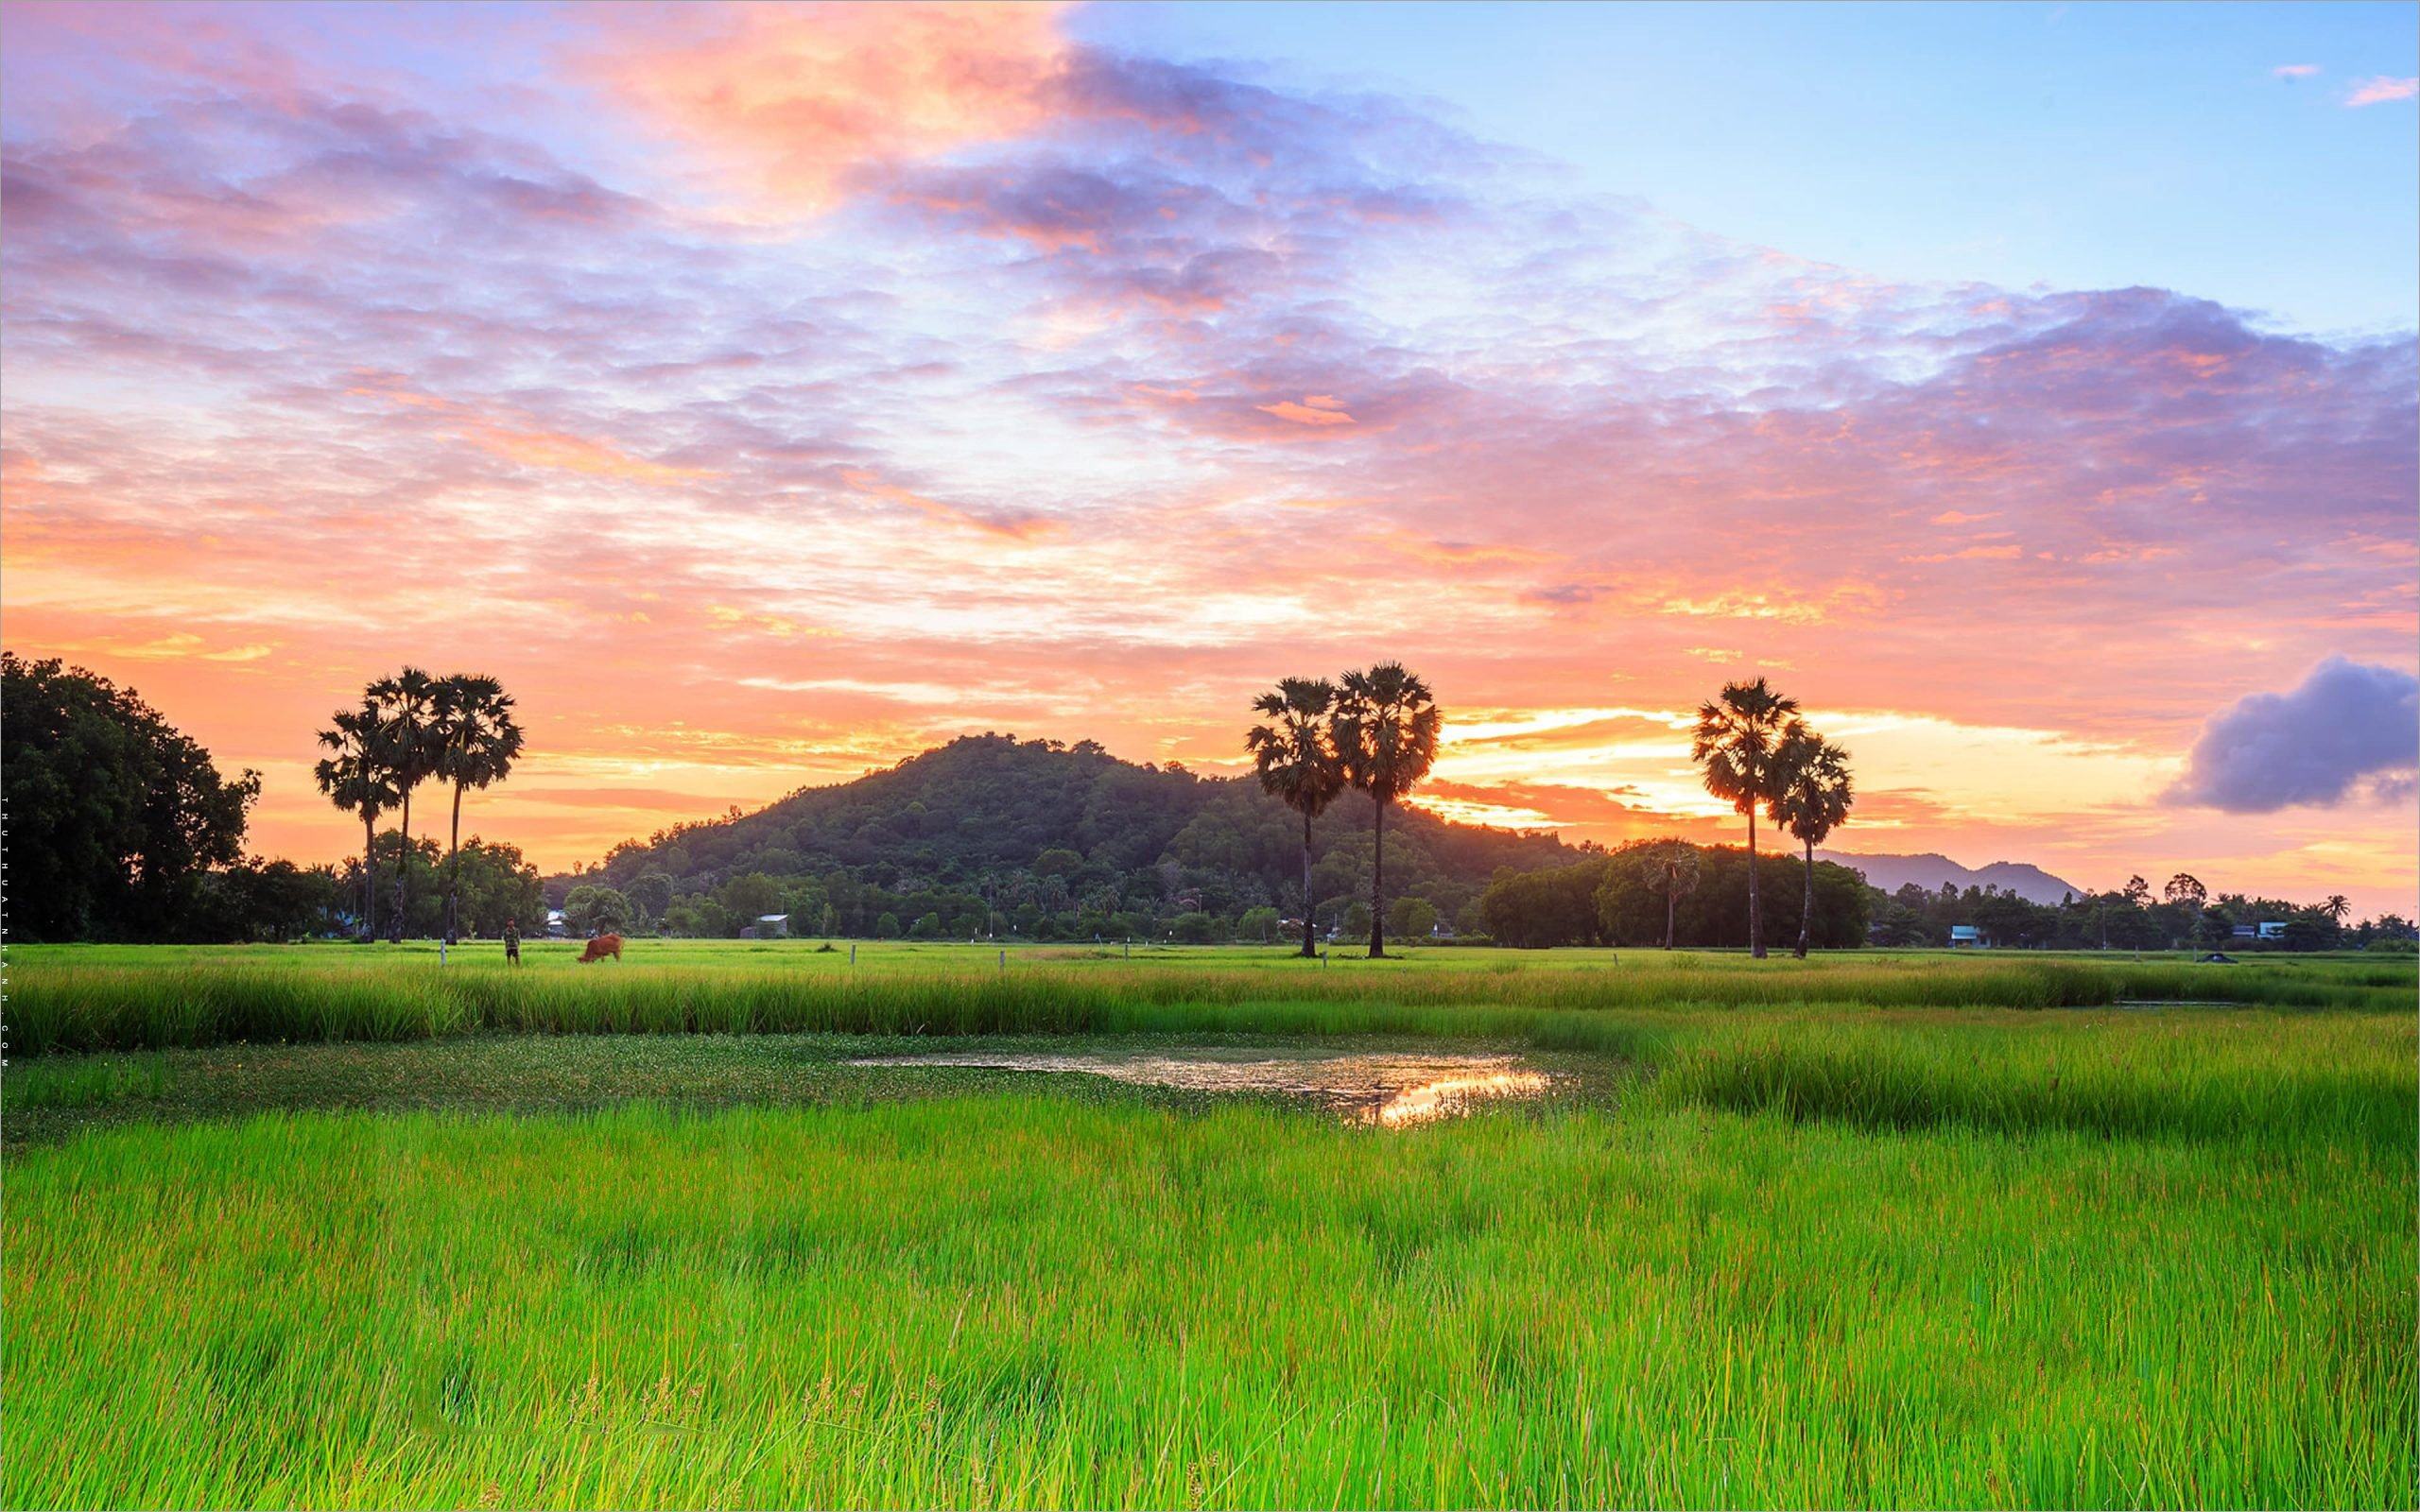 Hình nền quê hương Việt Nam là sự lựa chọn tuyệt vời cho mọi người yêu thích vẻ đẹp của nước Việt Nam. Bạn sẽ có thể ngắm nhìn các cánh đồng hoa cỏ xanh rì rào, những ngọn núi đầy hoa và ánh trăng trên mặt nước hồ trong bức ảnh này. Hãy để tinh thần được thả lỏng và trở về thời kỳ tuổi thơ của mình.